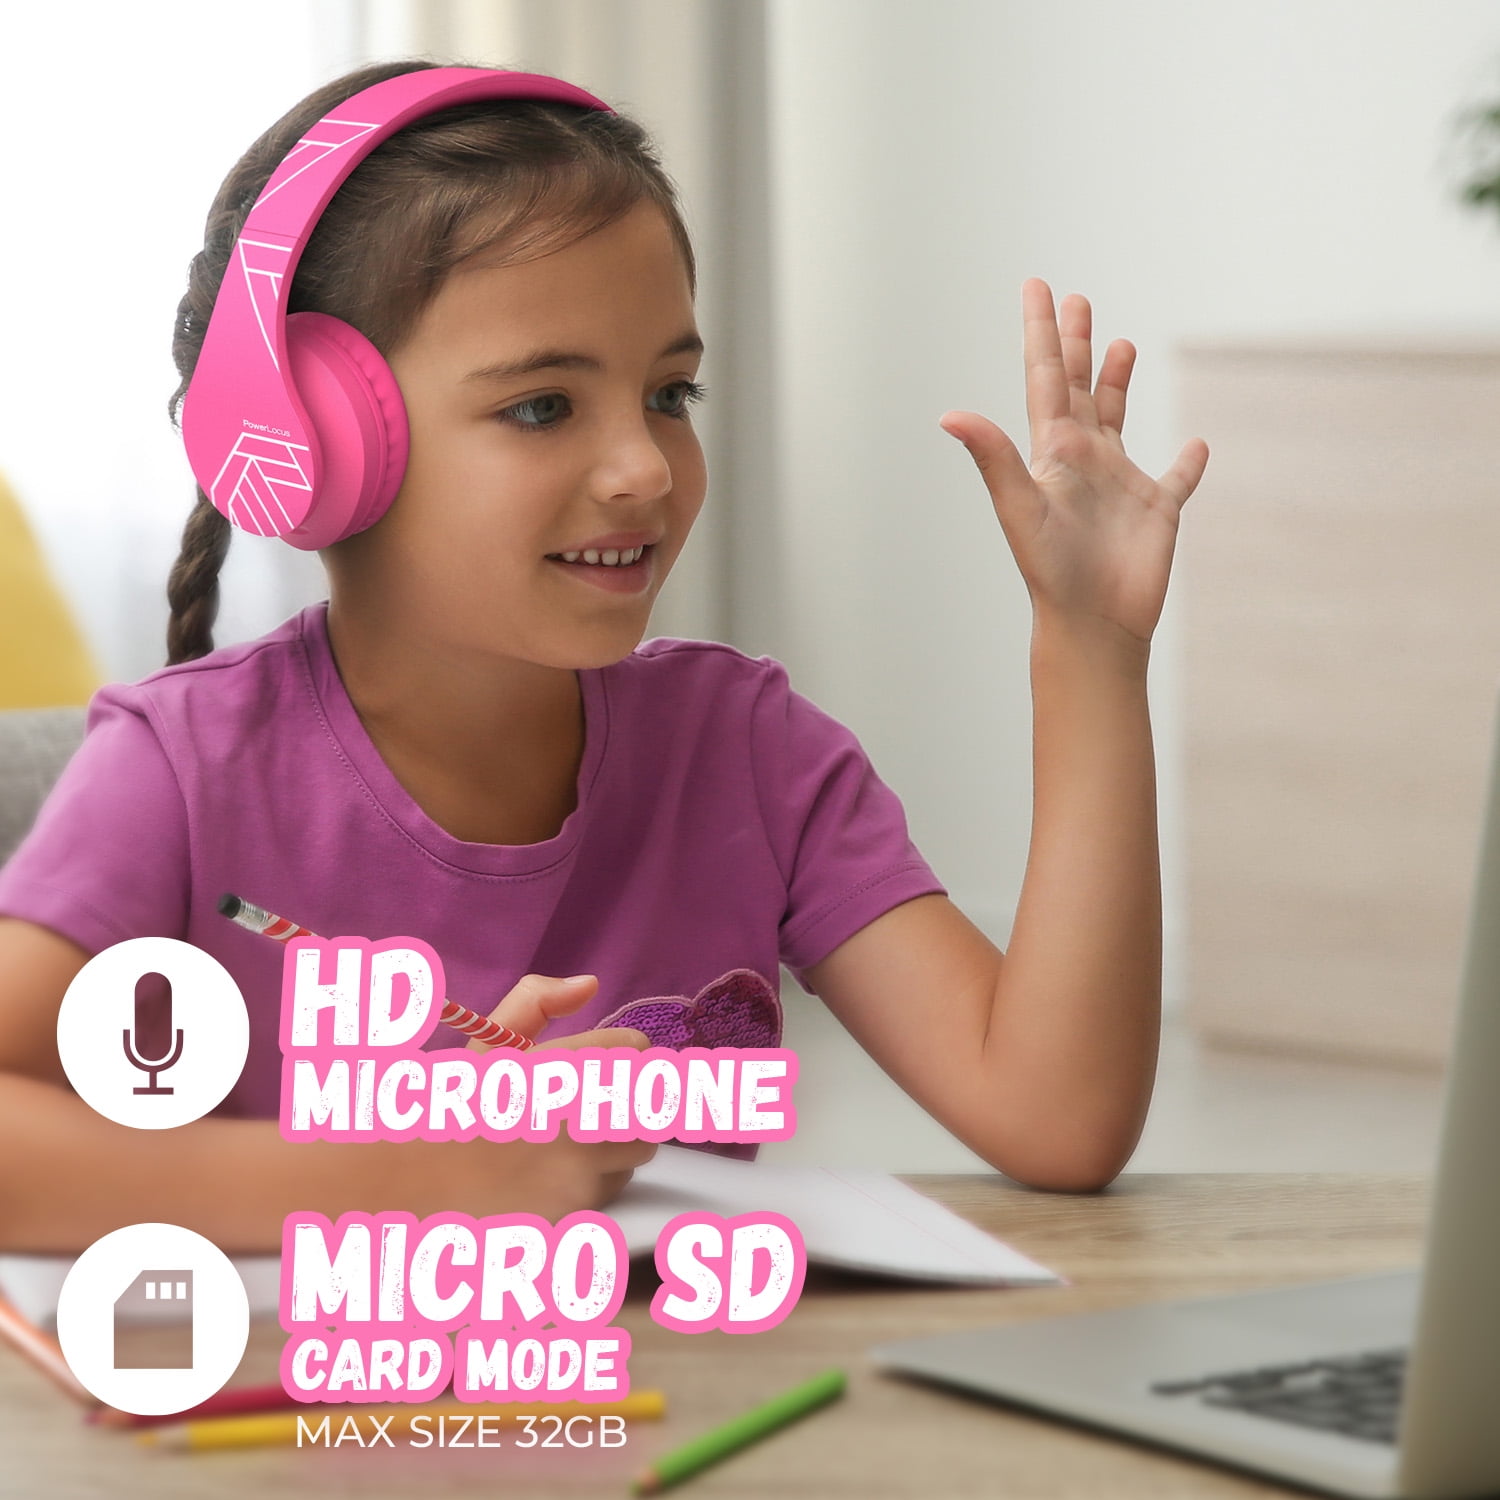 PowerLocus Casque Bluetooth Enfant, P2 Casque Audio pour Enfants